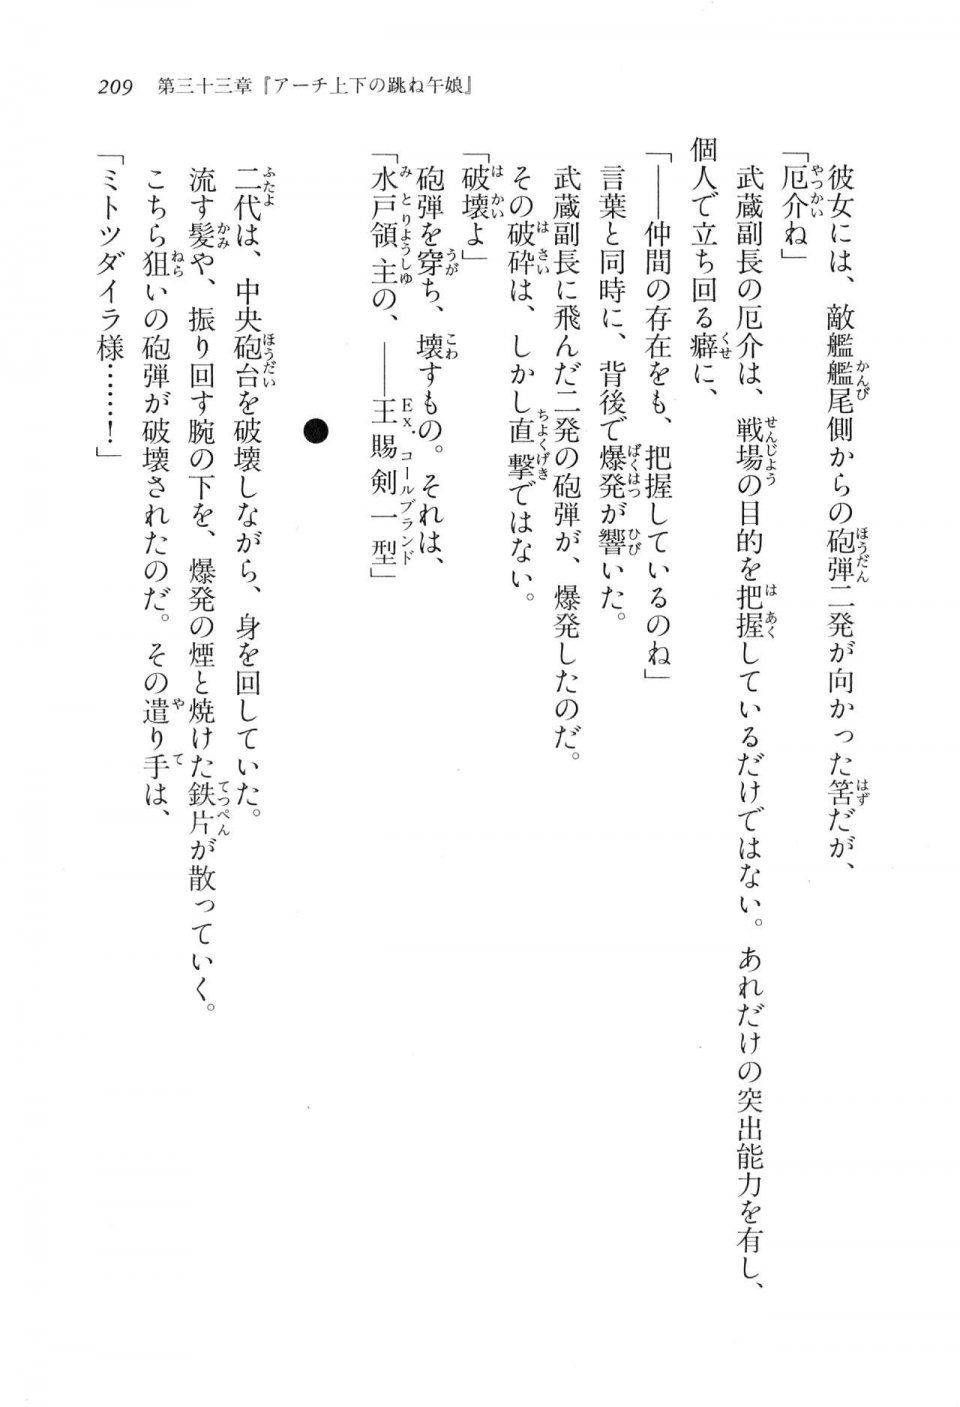 Kyoukai Senjou no Horizon LN Vol 17(7B) - Photo #209